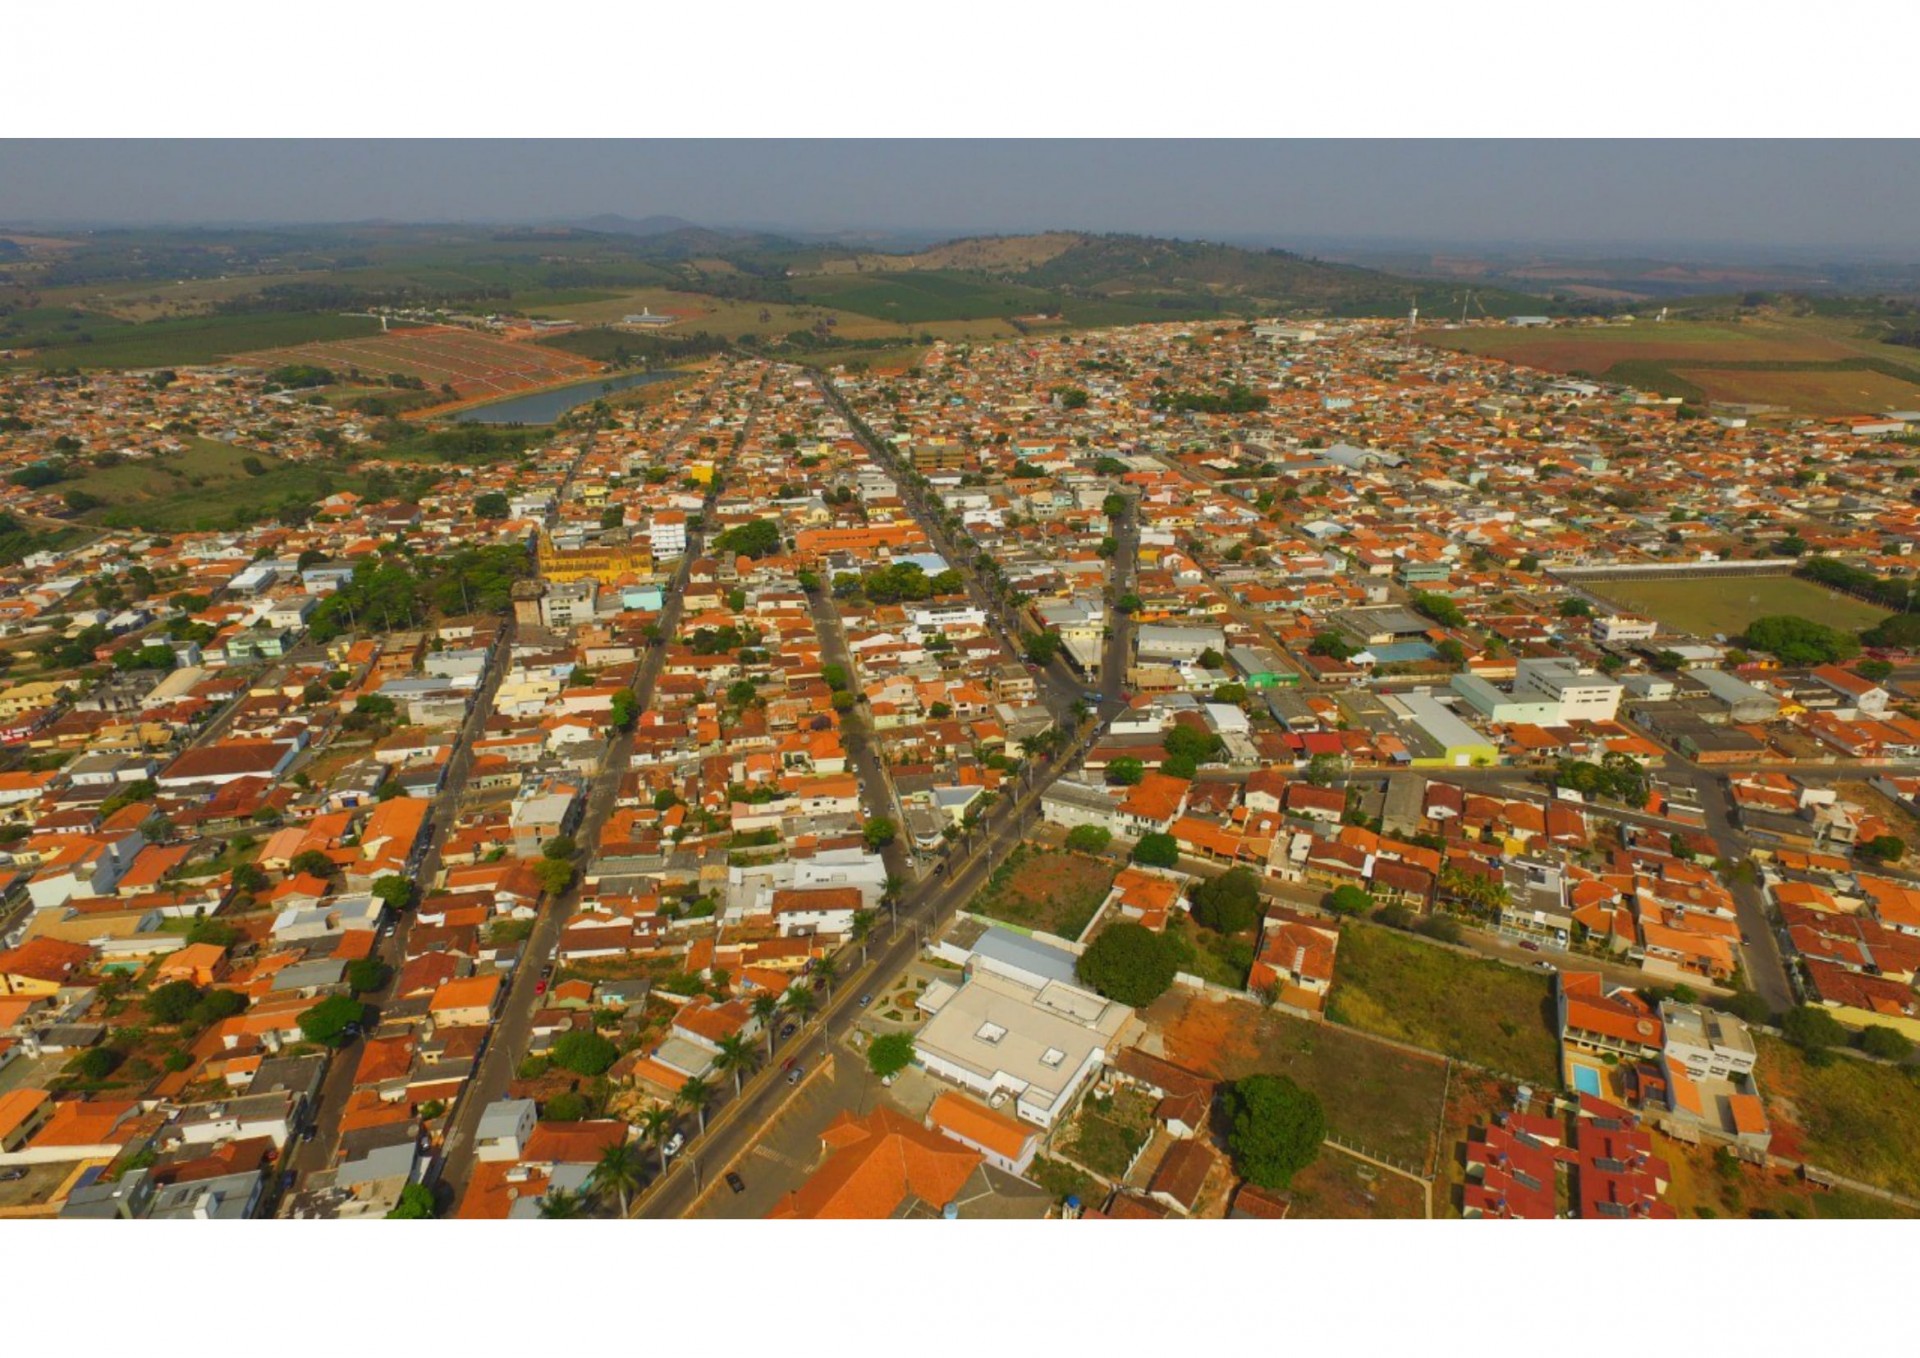 Foto: Turismo em Minas Gerais